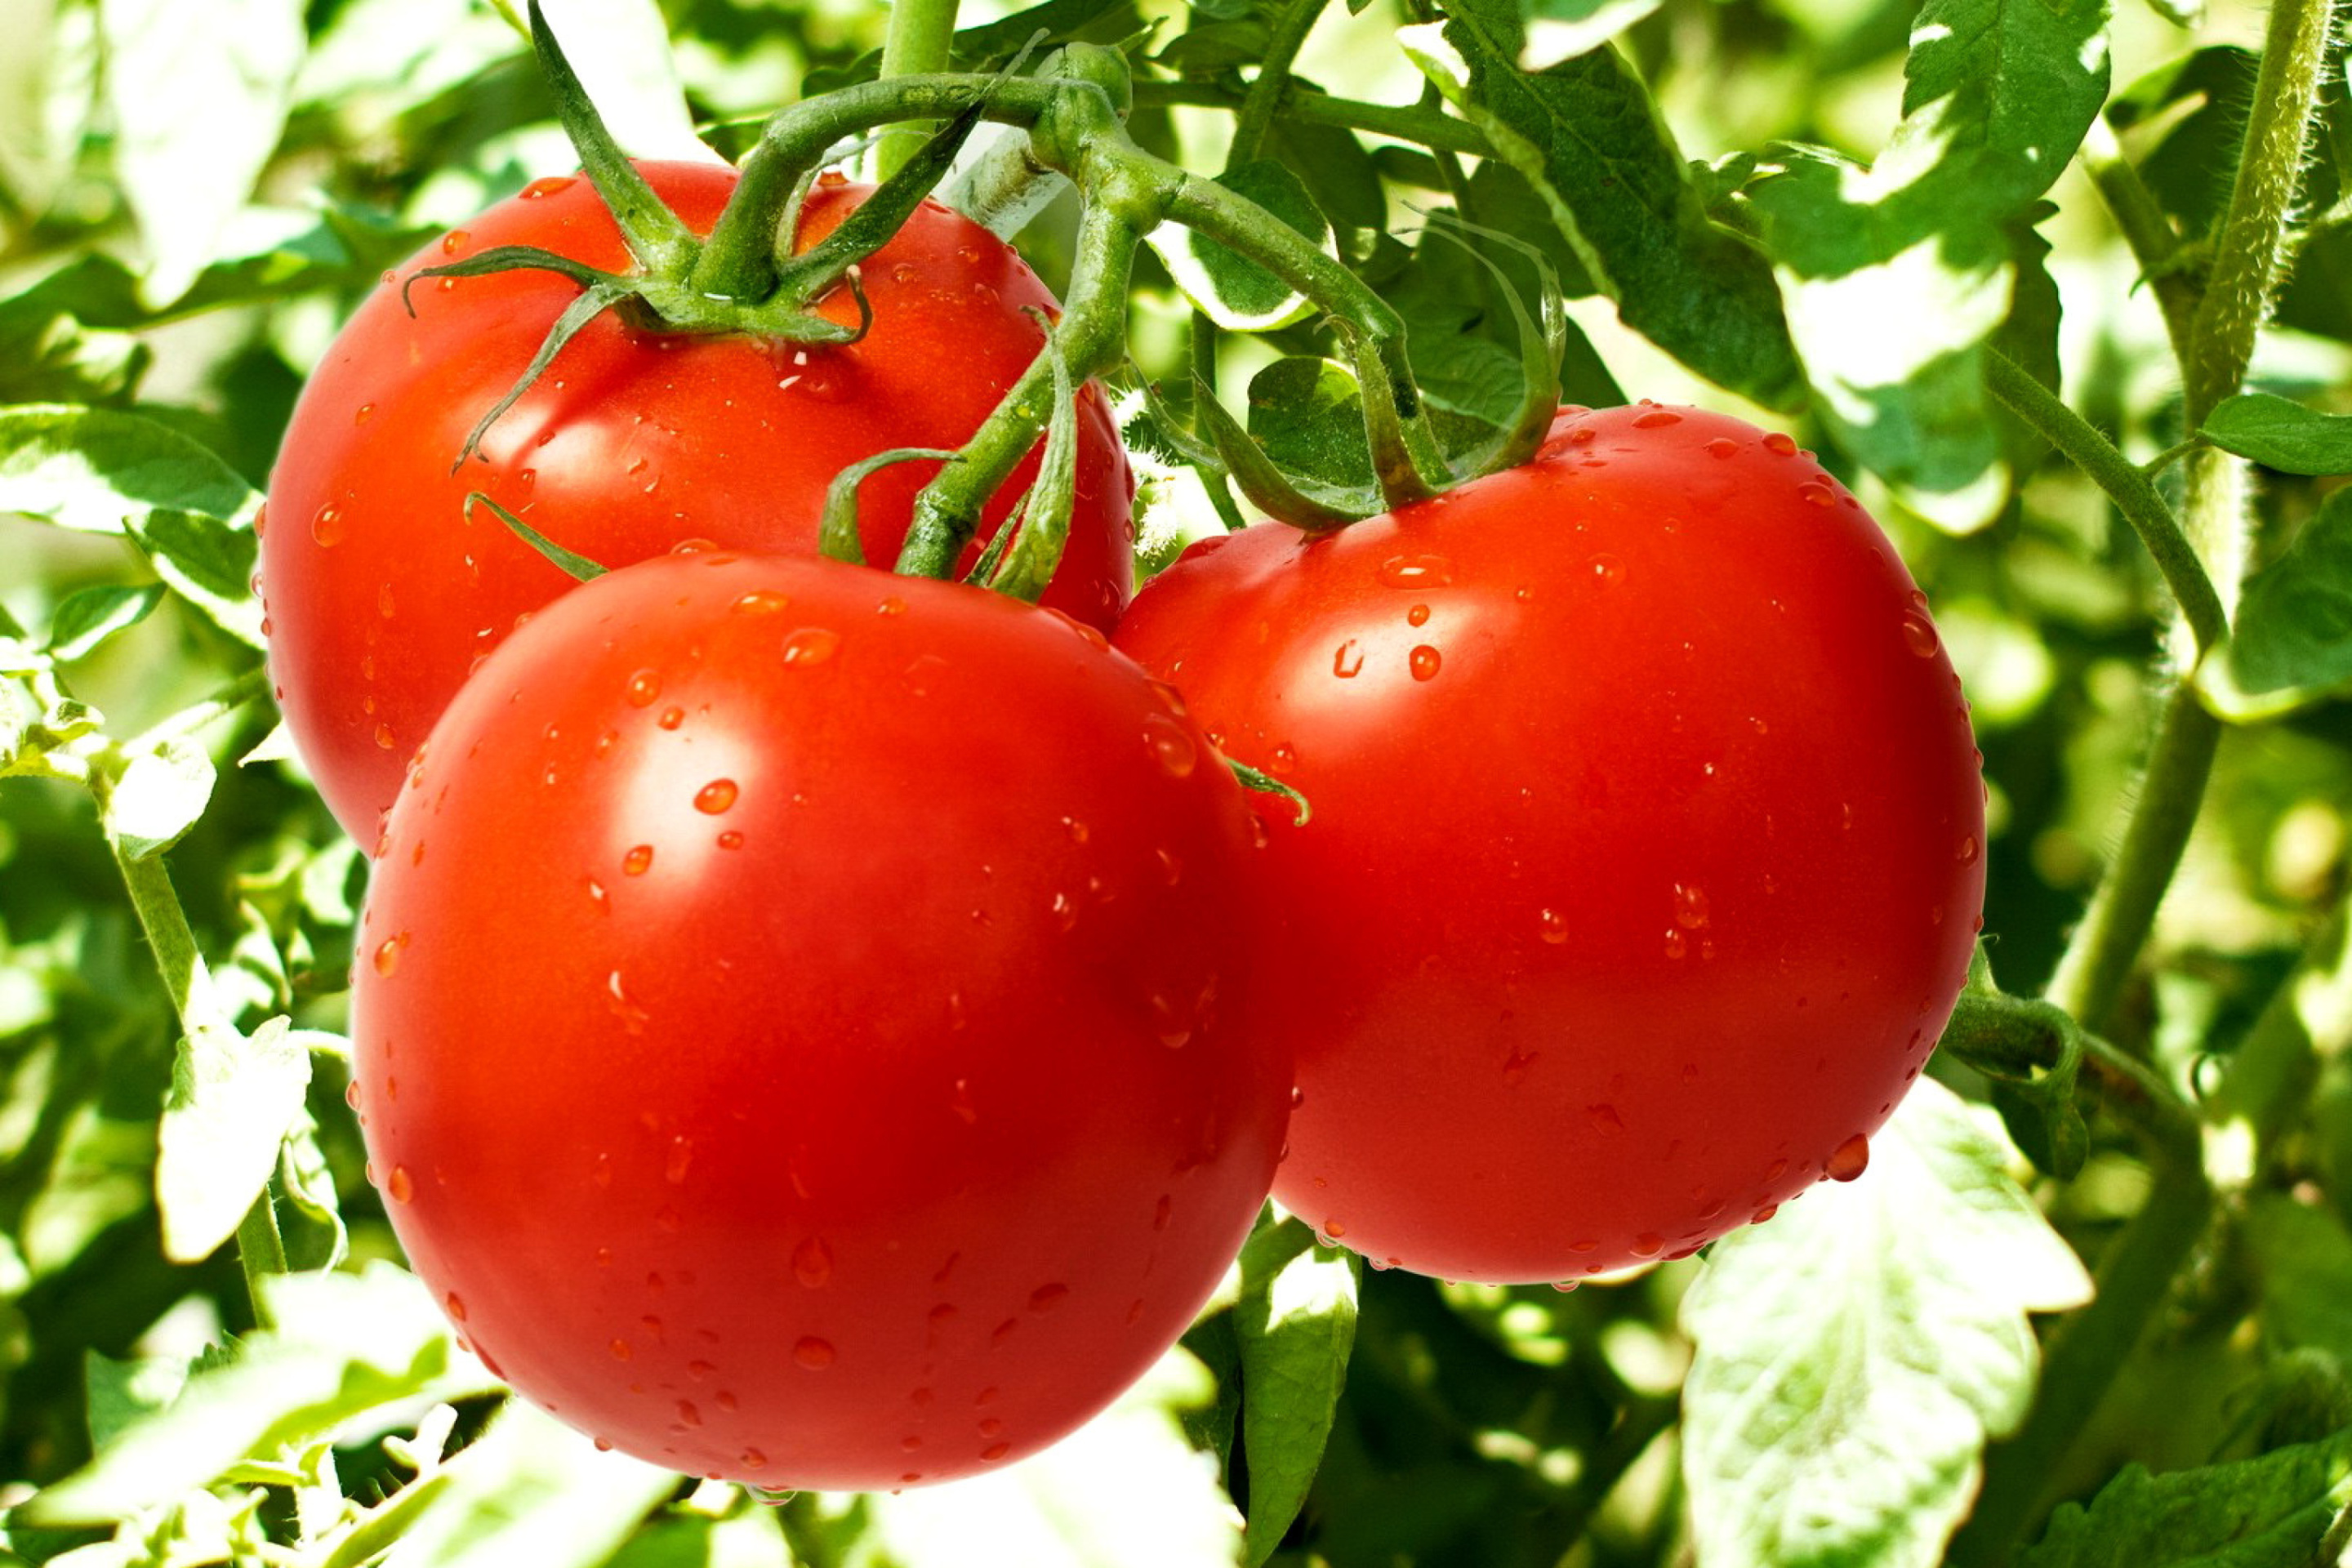 Sfondi Tomatoes on Bush 2880x1920